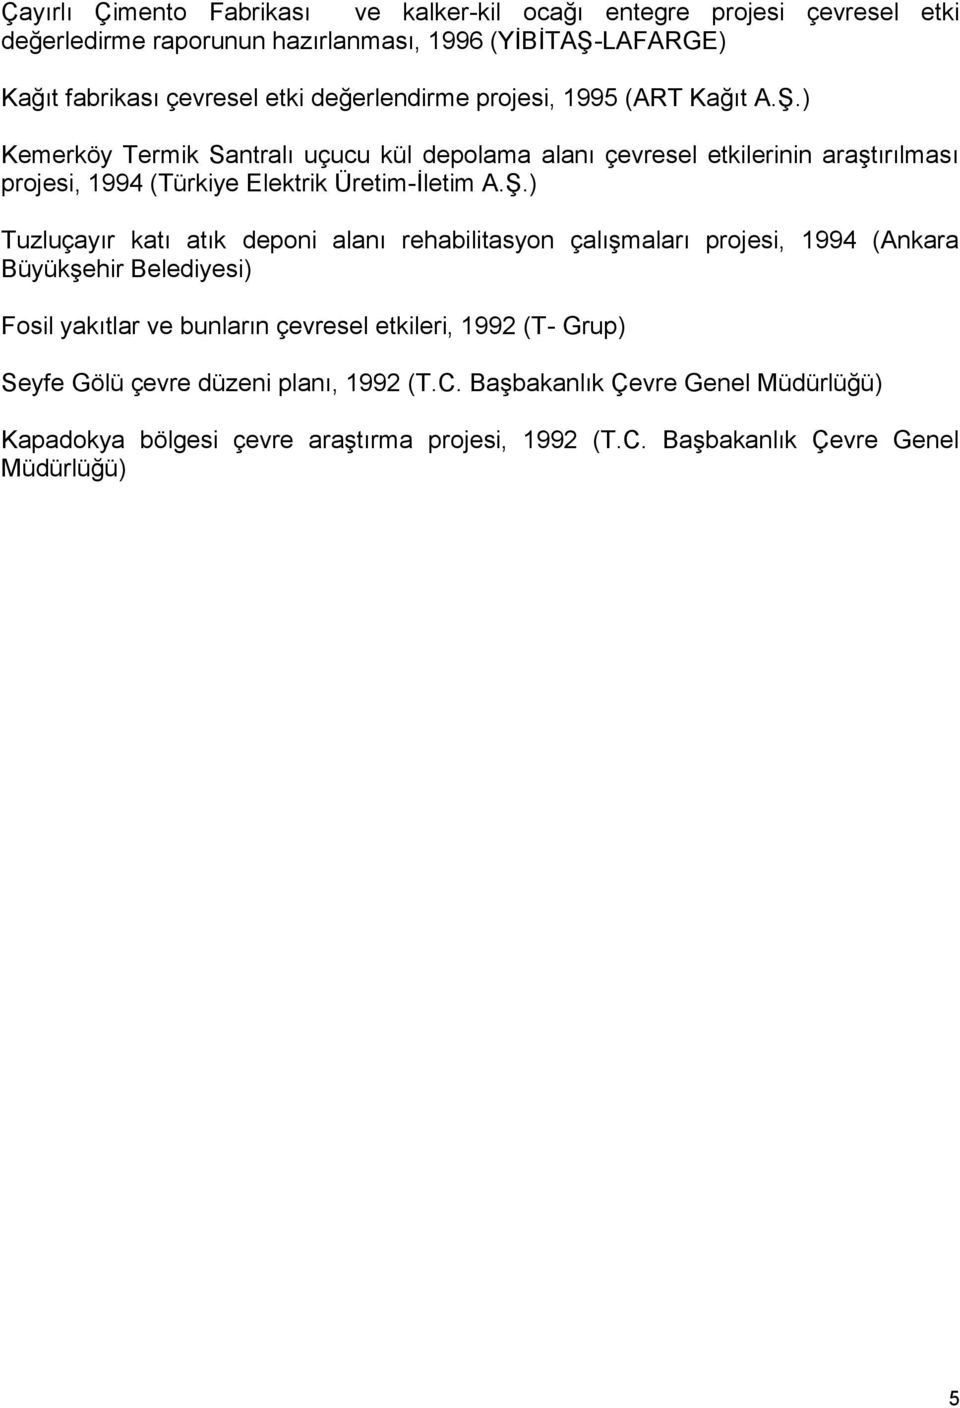 ) Kemerköy Termik Santralı uçucu kül depolama alanı çevresel etkilerinin araştırılması projesi, 1994 (Türkiye Elektrik Üretim-İletim A.Ş.